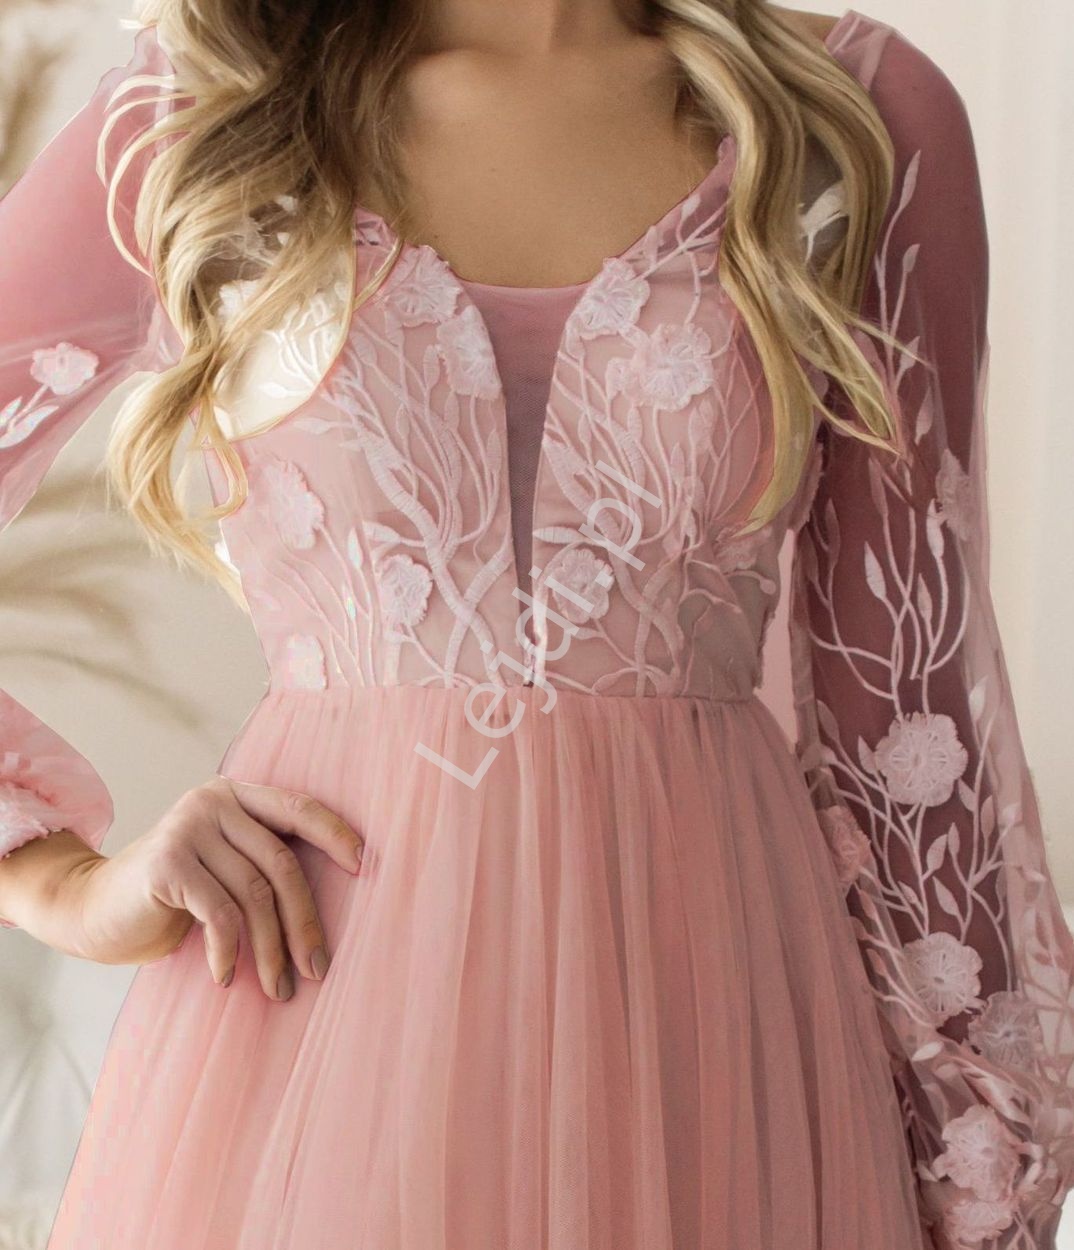 Pudrowo różowa suknia z haftowanymi wzorami z długim rękawem